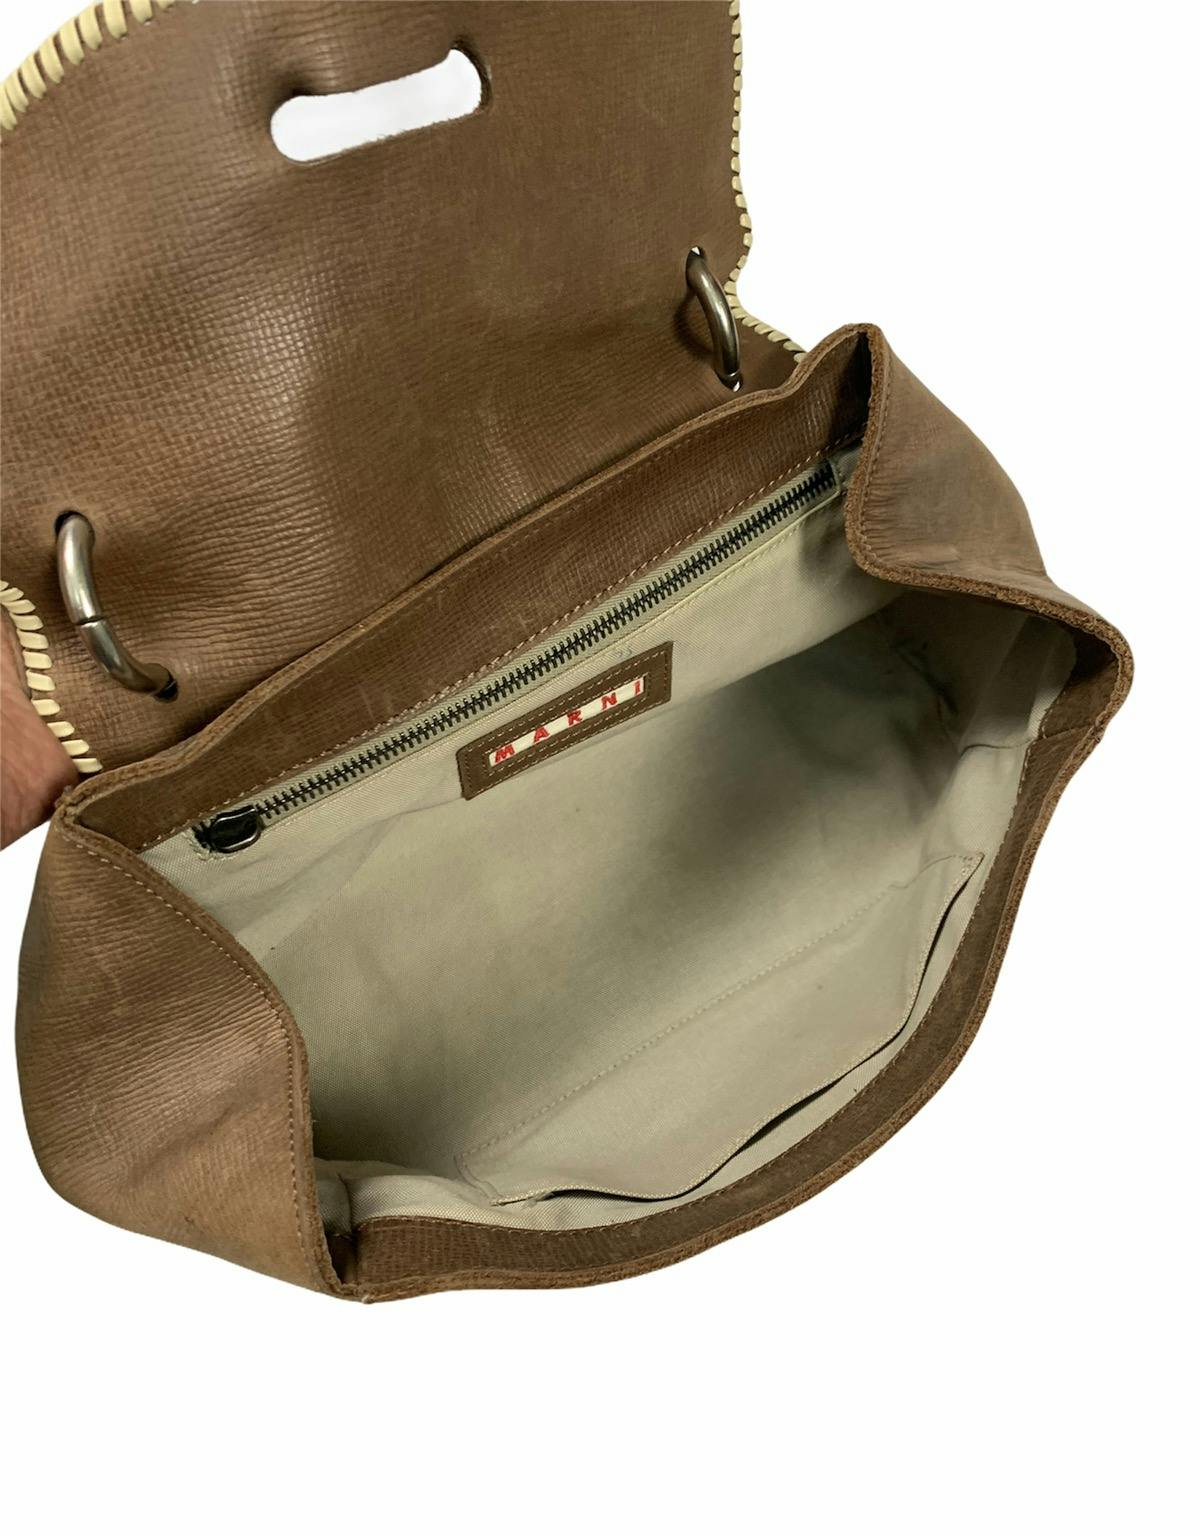 Marni leather handbag - 7